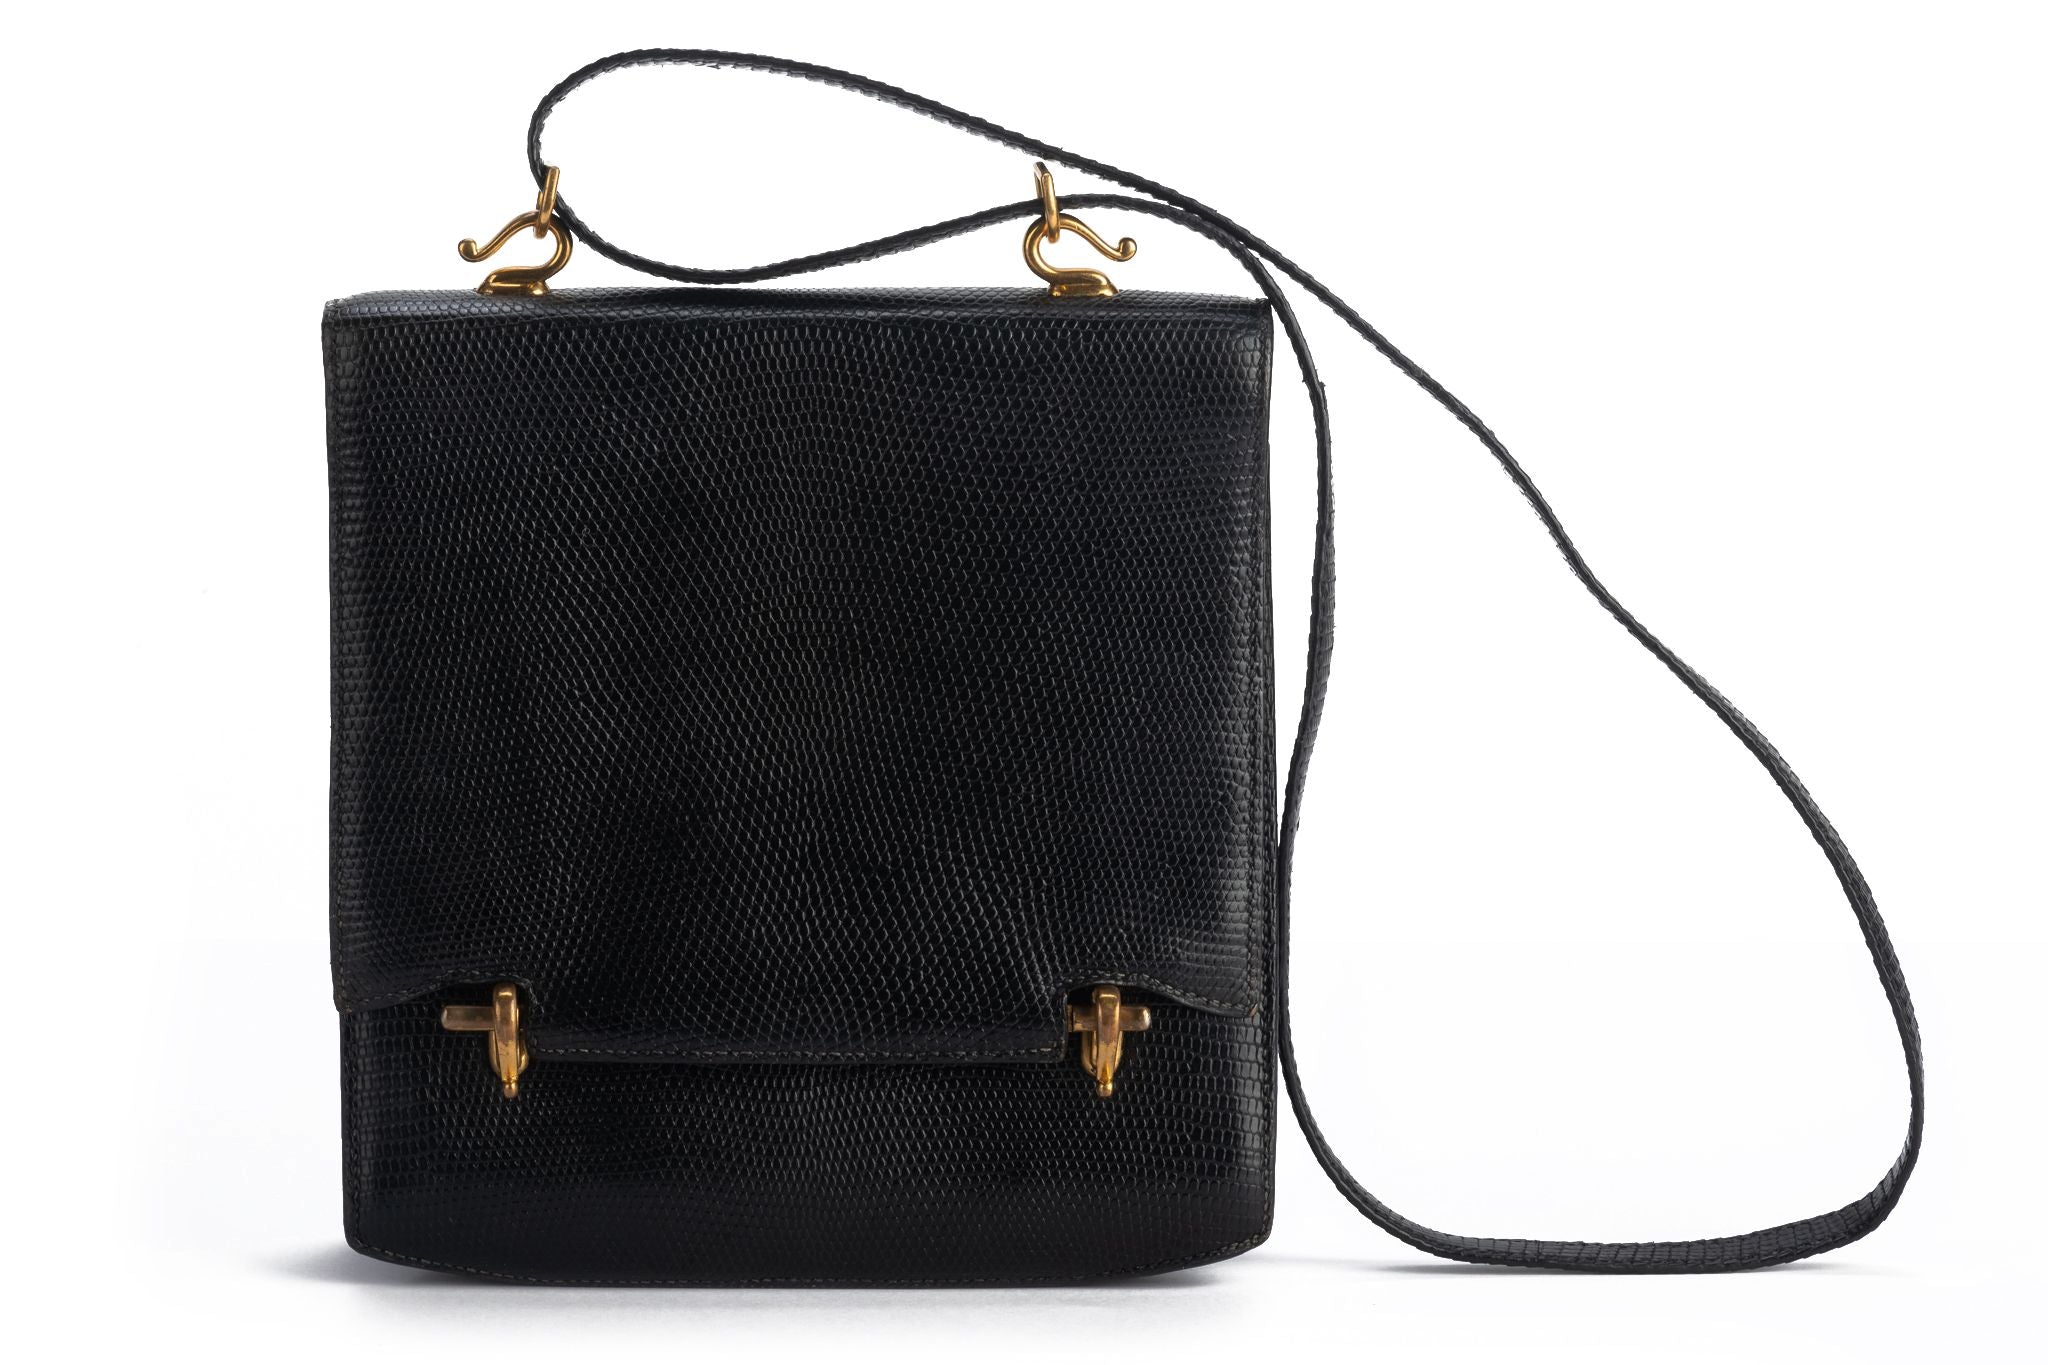 Black Vintage Quilted Shoulder Bag Crossbody Purse with Metal